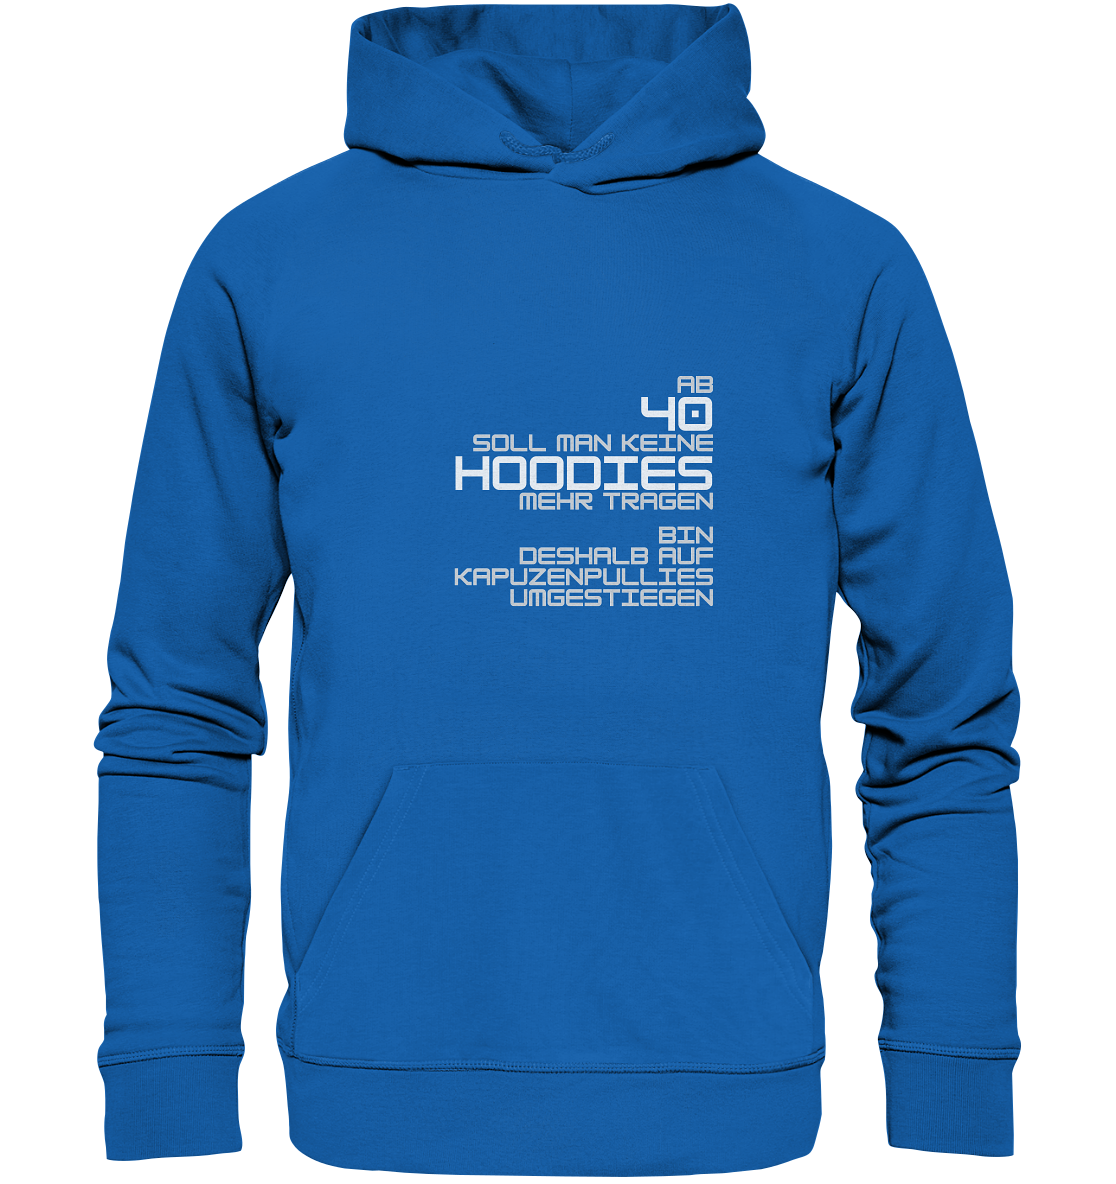 Hoodie für Damen+Herren, Spruch vorn: "Ab 40 soll man keine Hoodies mehr tragen." blau